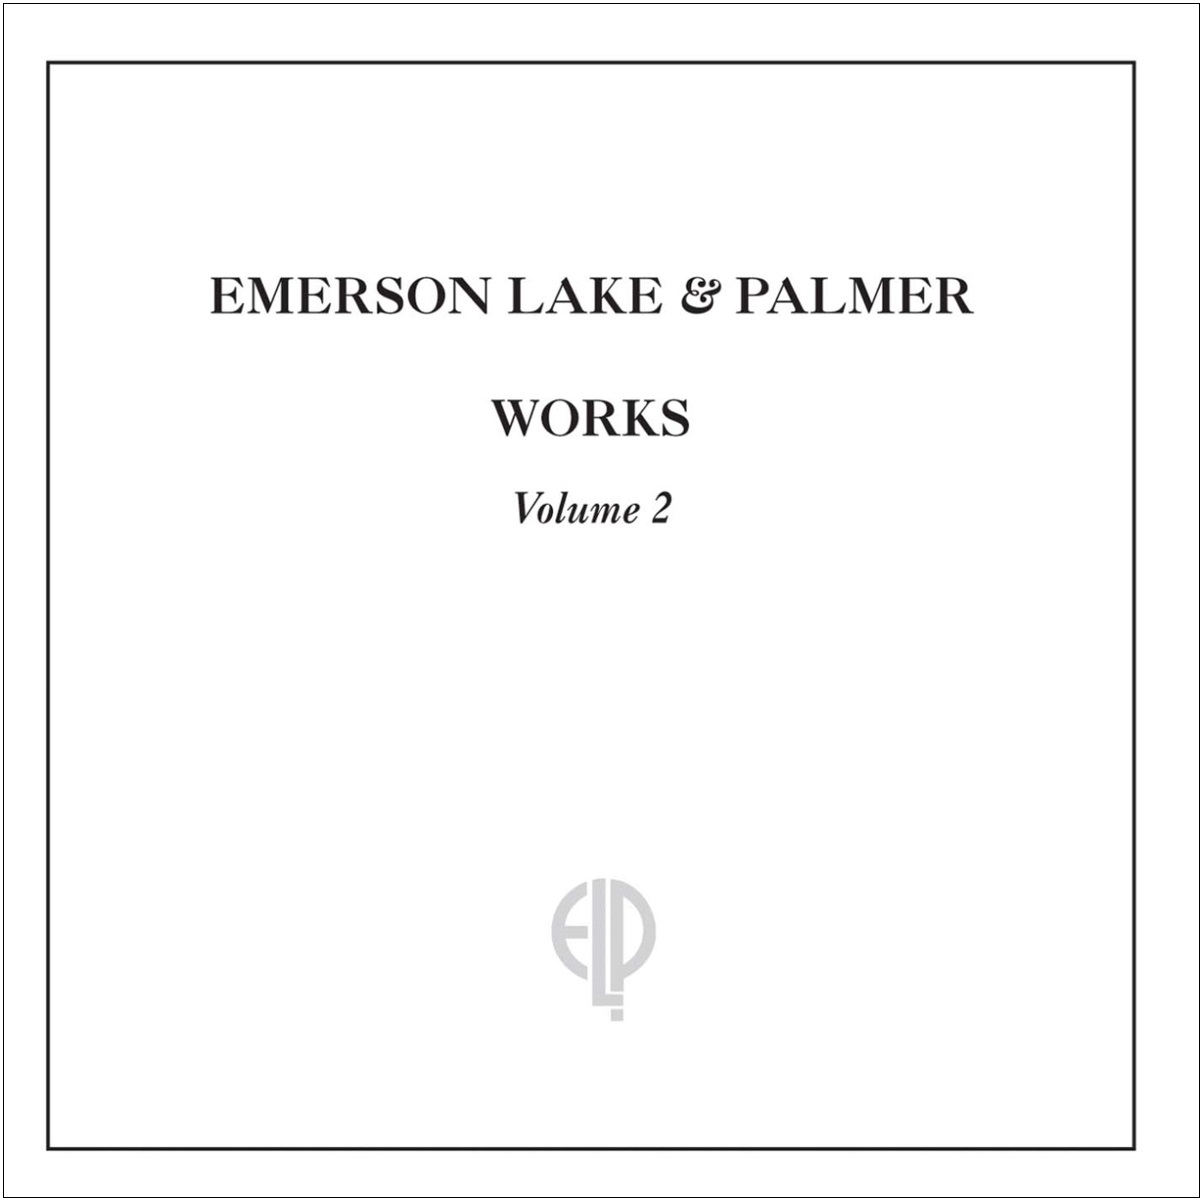 

Emerson, Lake & Palmer Works Vol.2